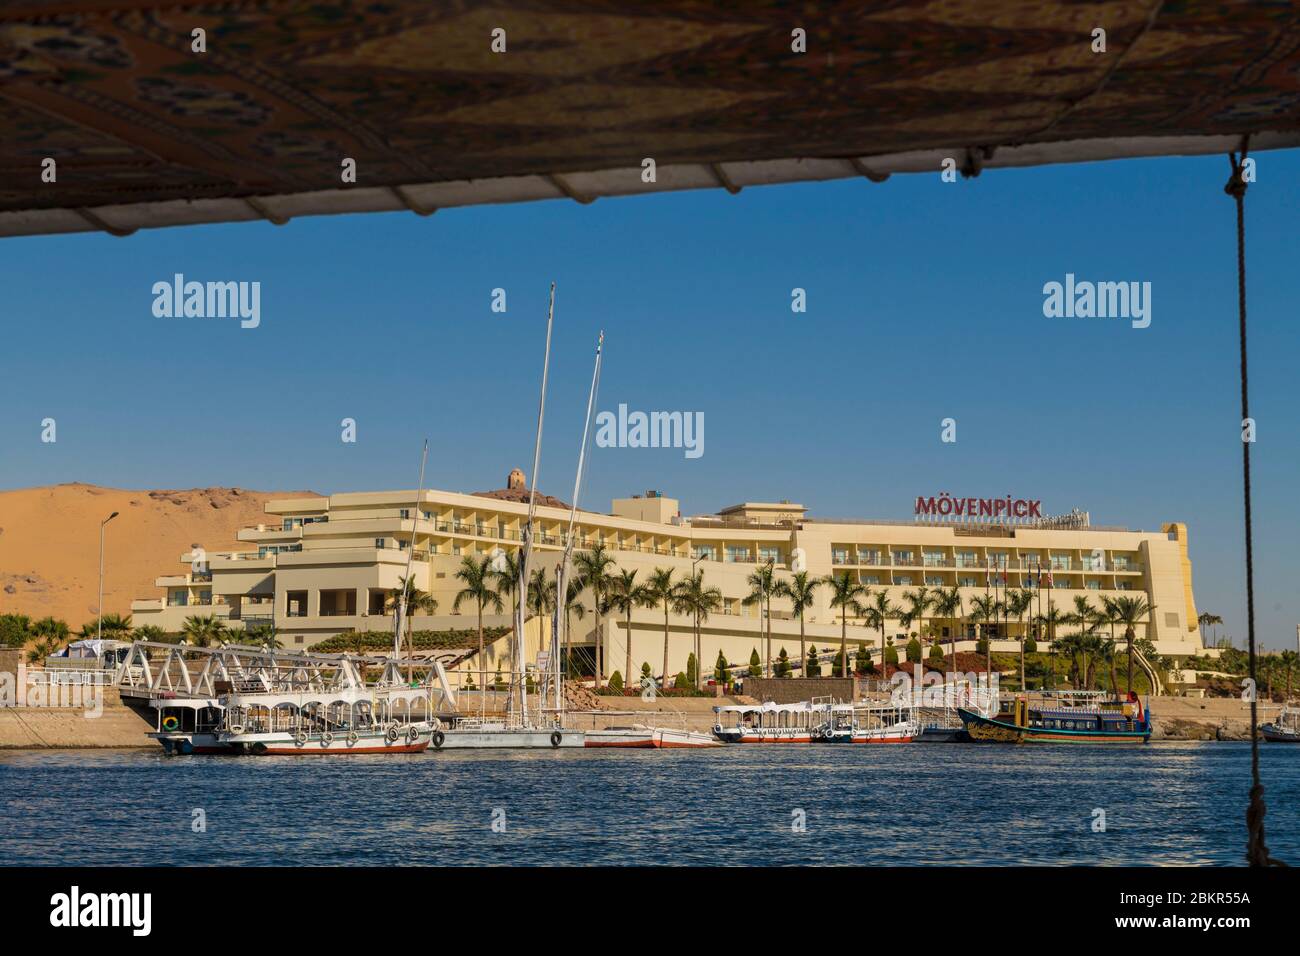 Egypt, Upper Egypt, near Elephanine island, sailor on a felucca sailing on the Nile Stock Photo